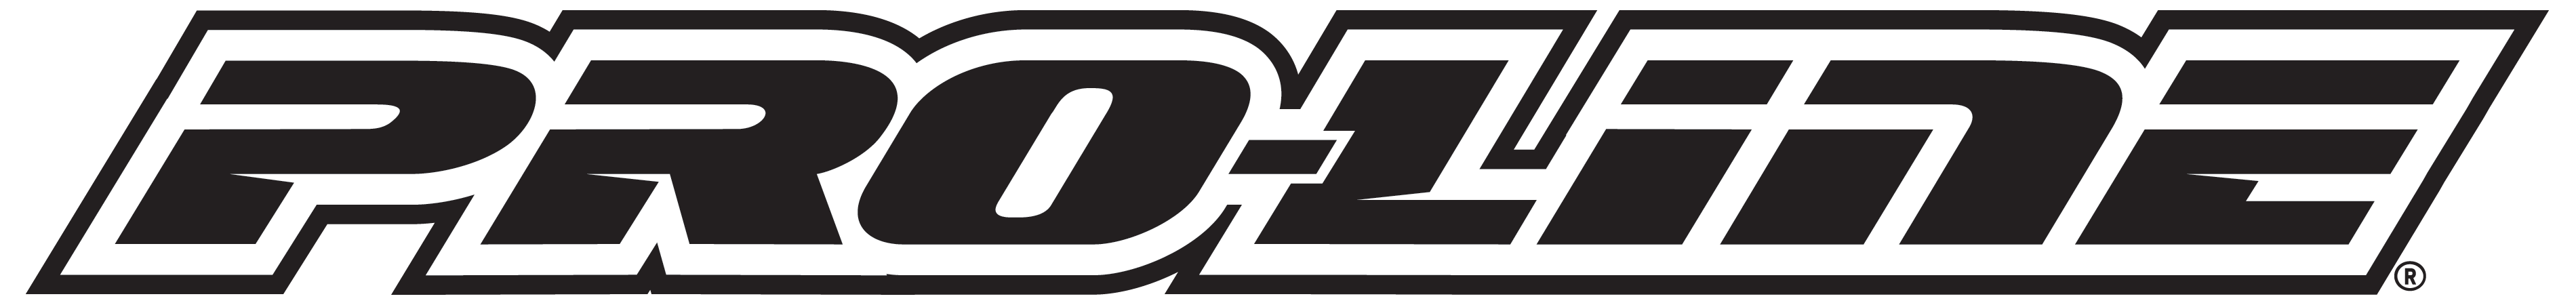 Pro Series Drag Racing logo d